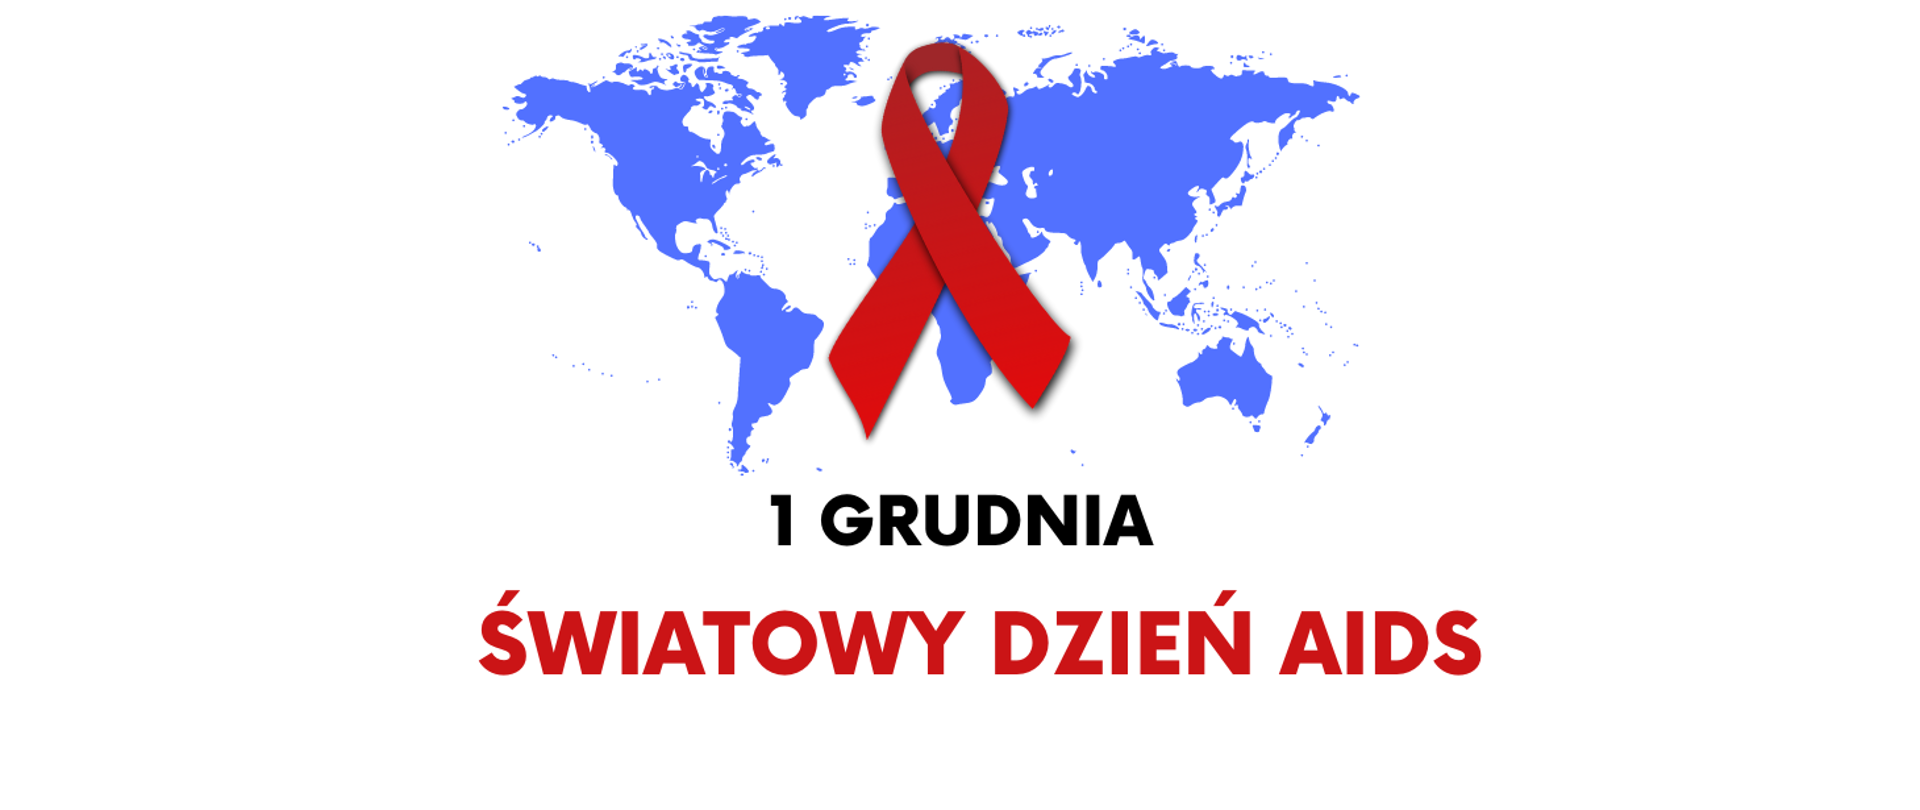 Na białym tle niebieska mapa świata. Na mapie czerwona wstążeczka. Napis: 1 grudnia Światowy Dzień AIDS